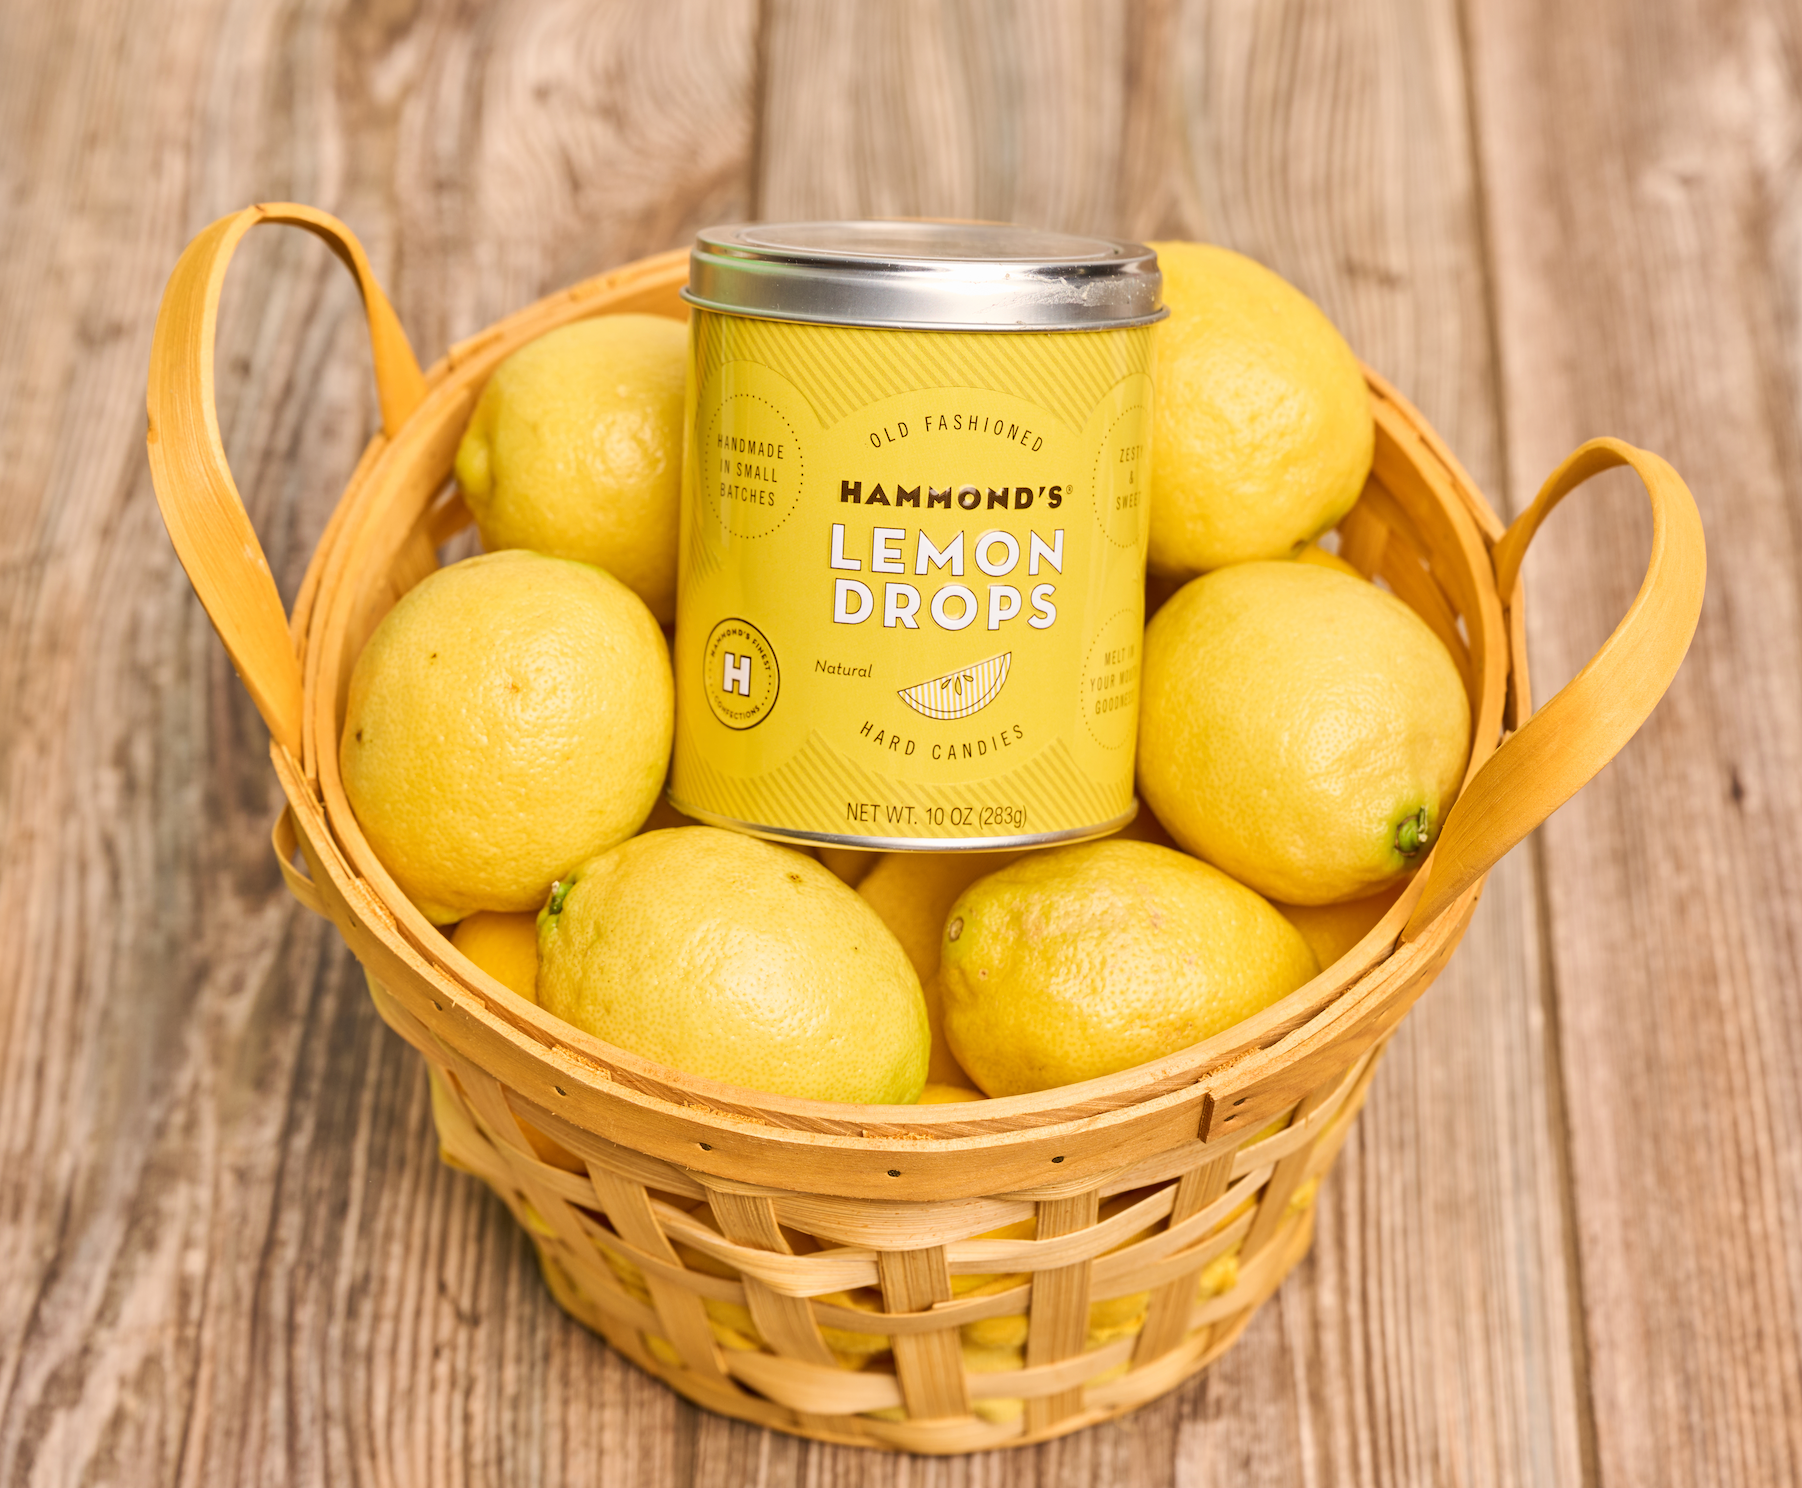 Hammond's Lemon Drops in Basket of Lemons